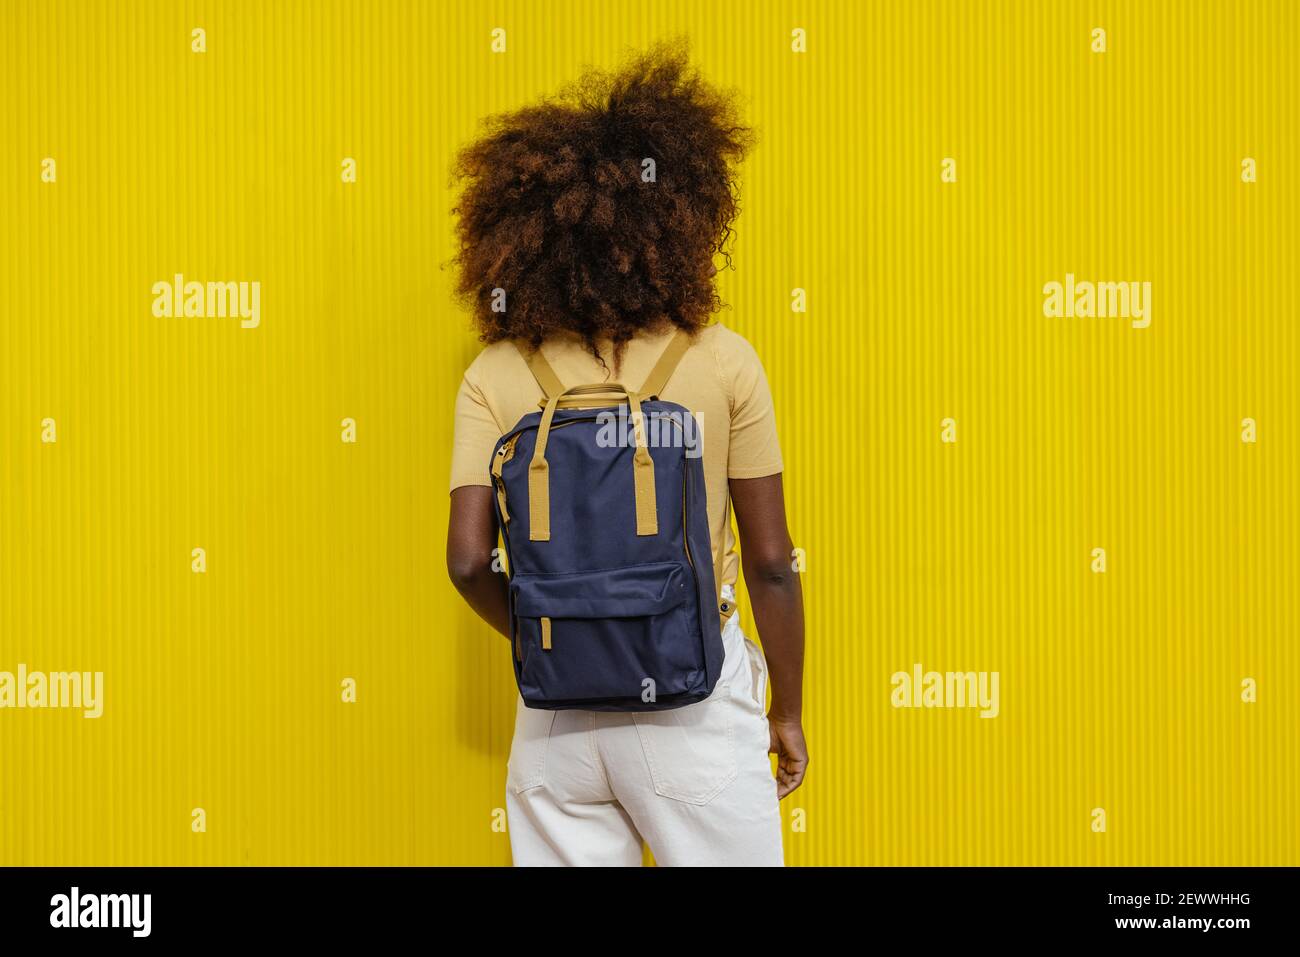 Vue arrière femme noire avec cheveux afro avec un sac à dos sur son dos  Photo Stock - Alamy